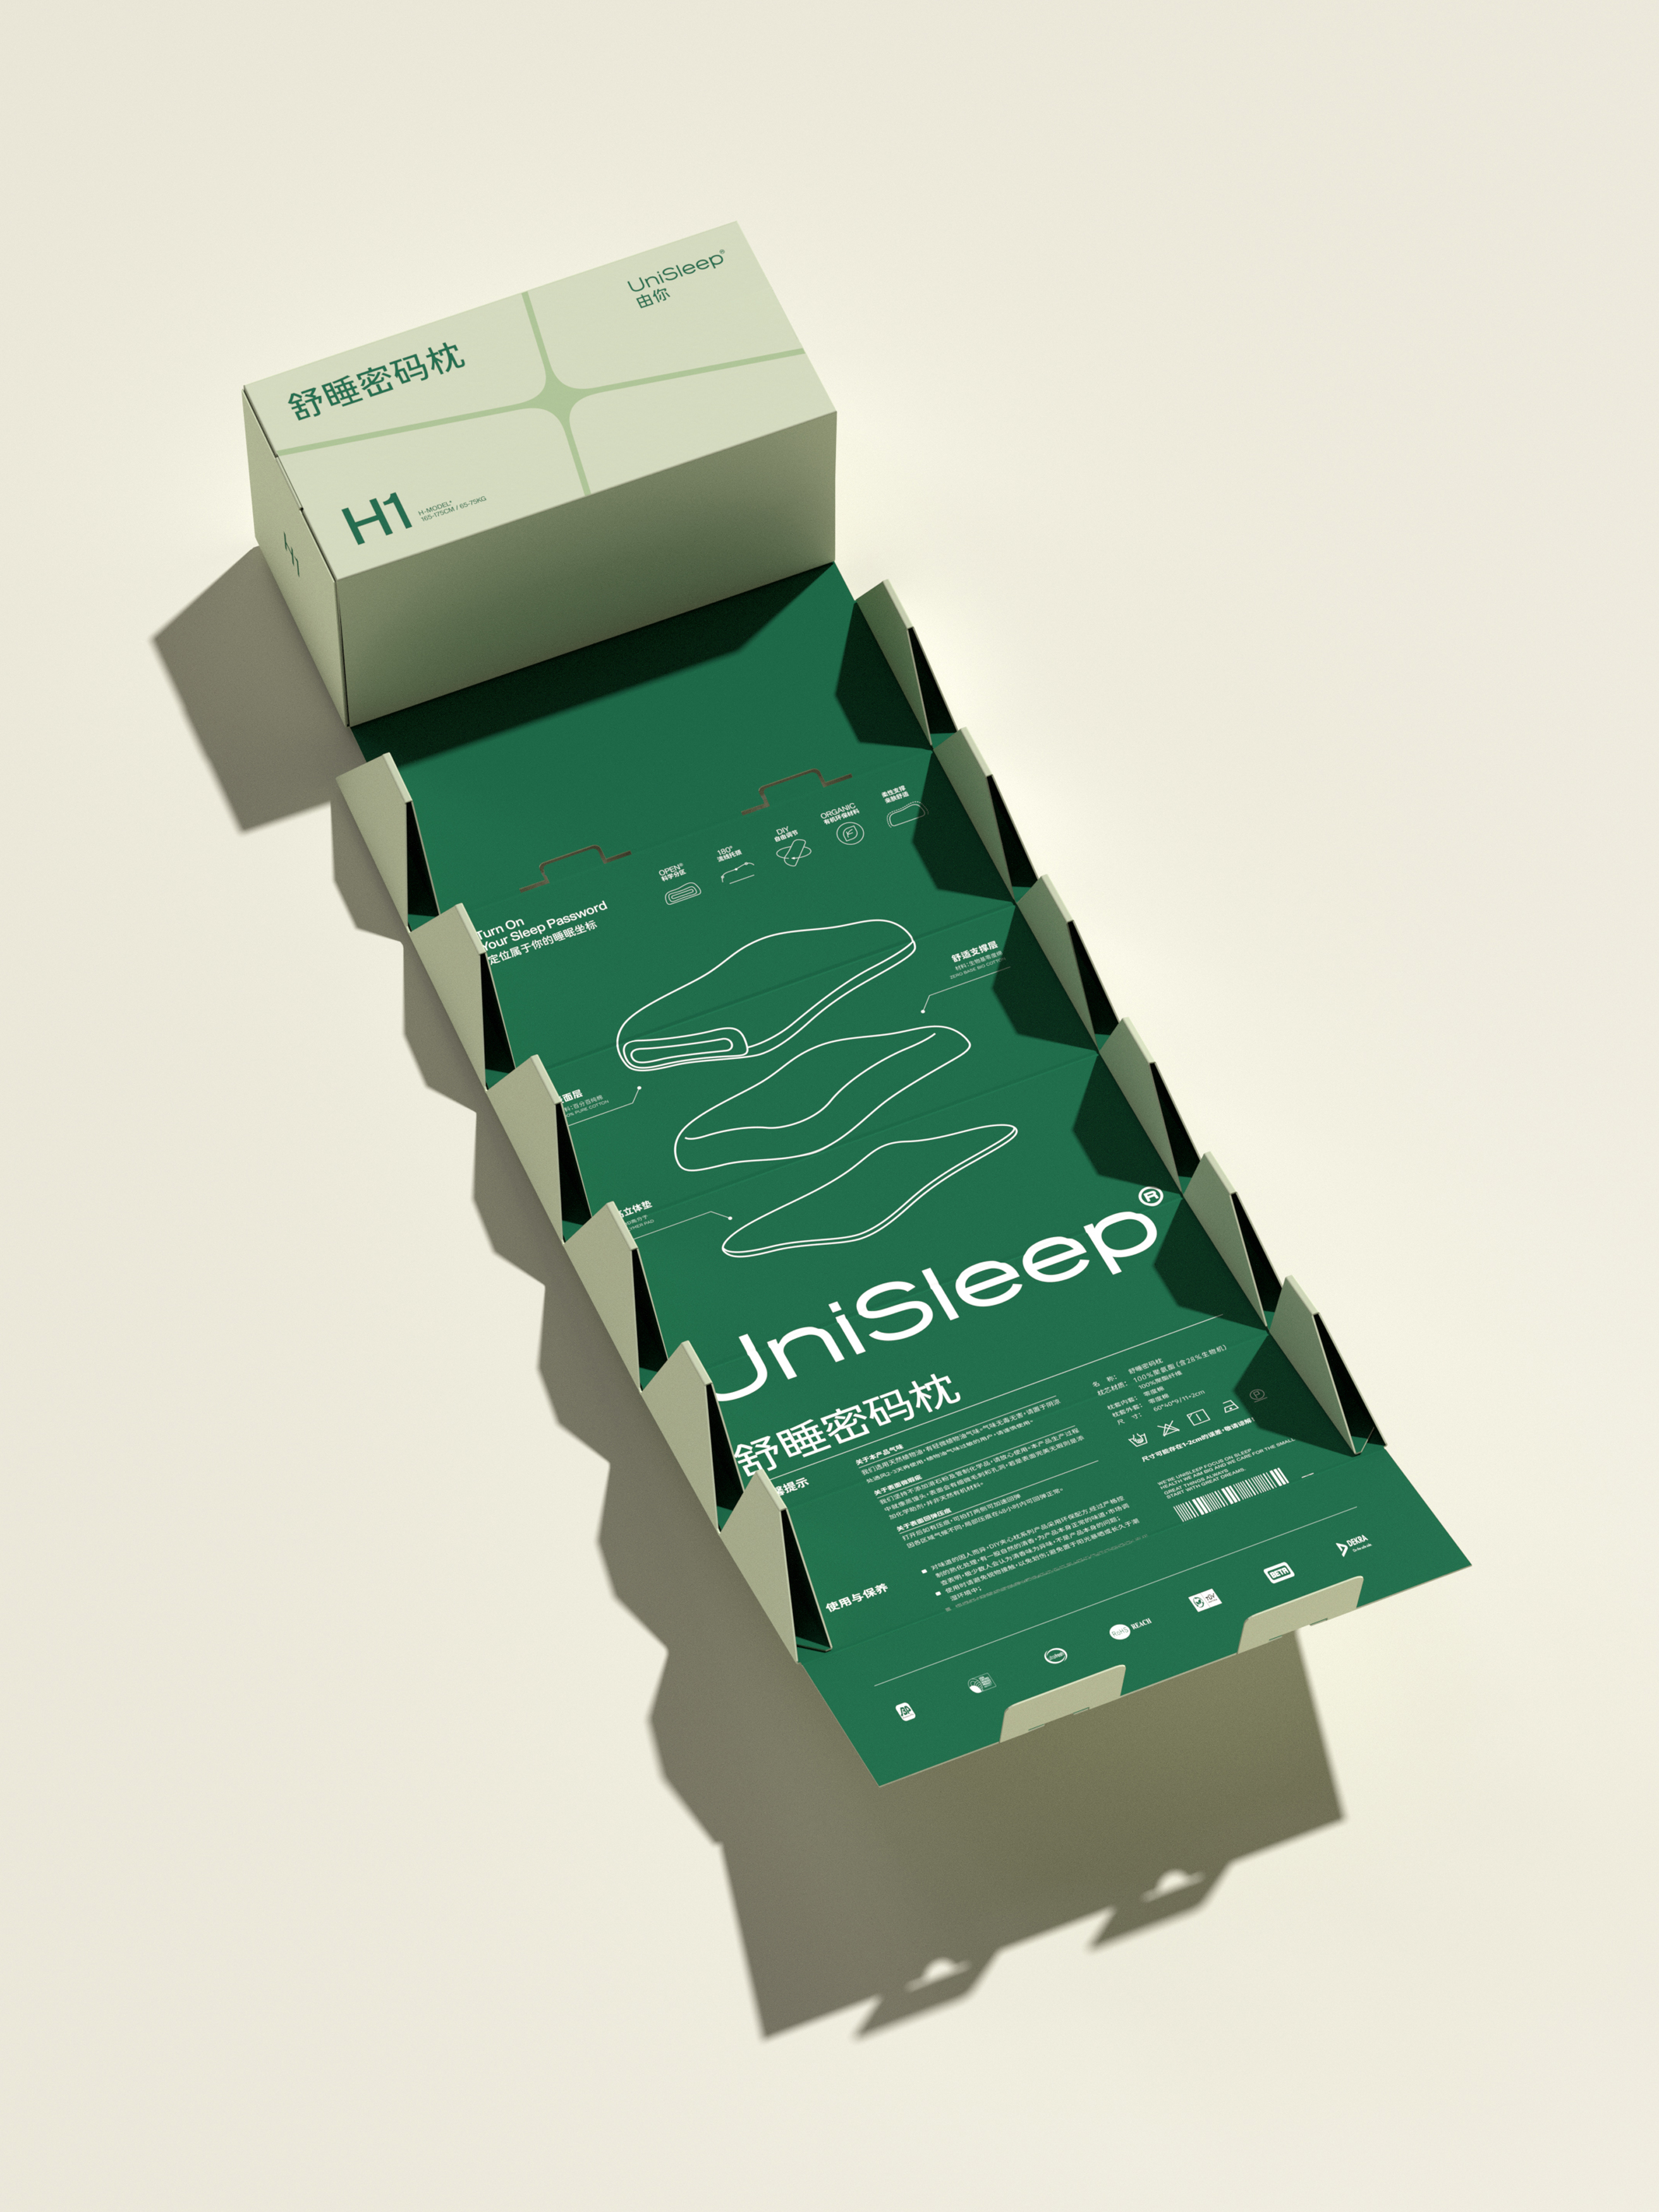 Pillow packaging design of UniSleep